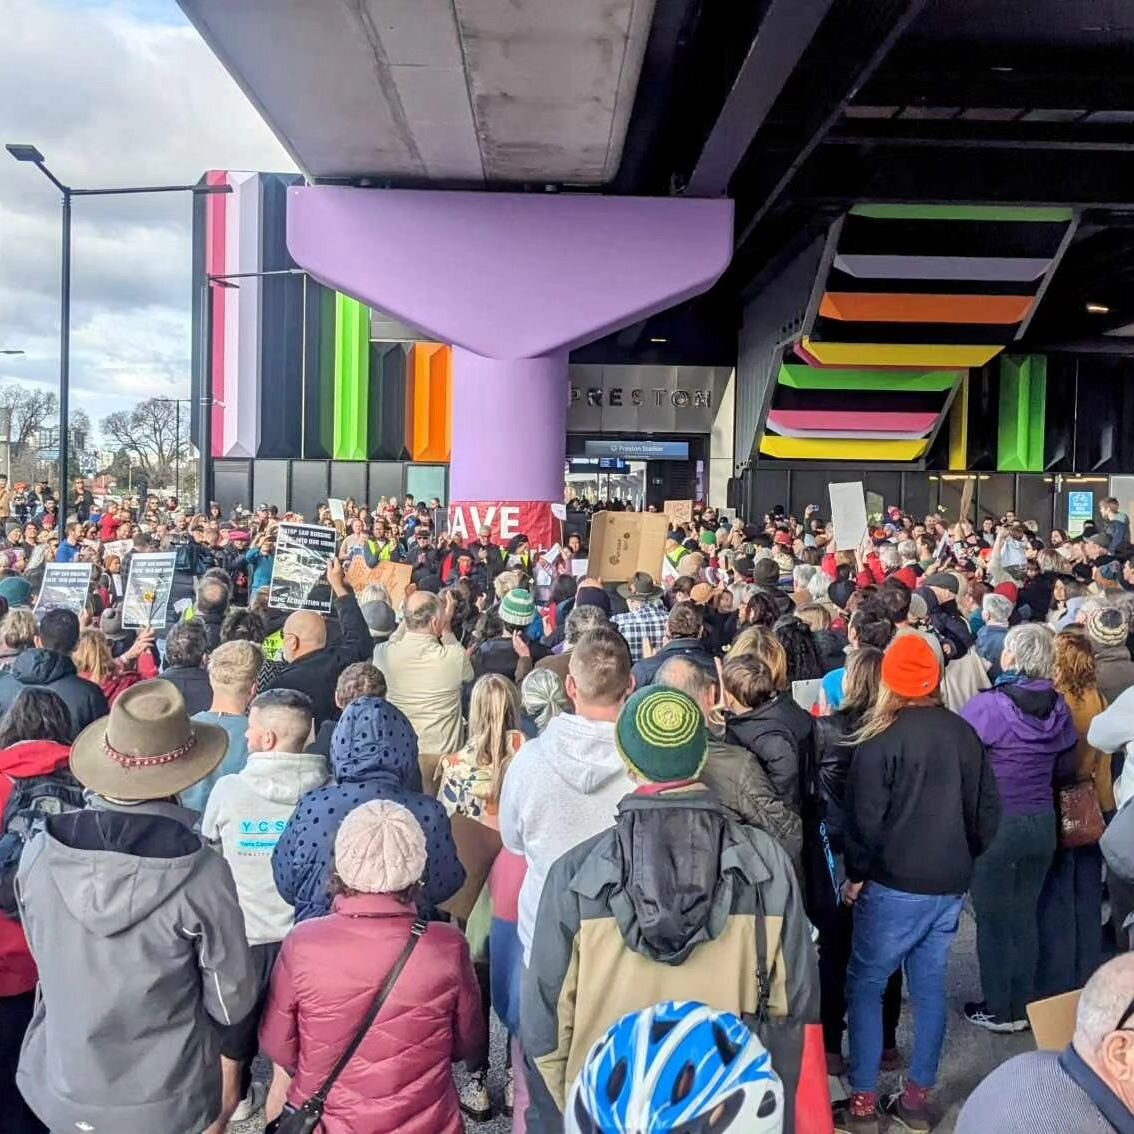 Look at this crowd! 😍 😭🙏👏✨️🔥🔥🔥🔥

#saveprestonmarket 
#savethetraders 
#handsaroundprestonmarket